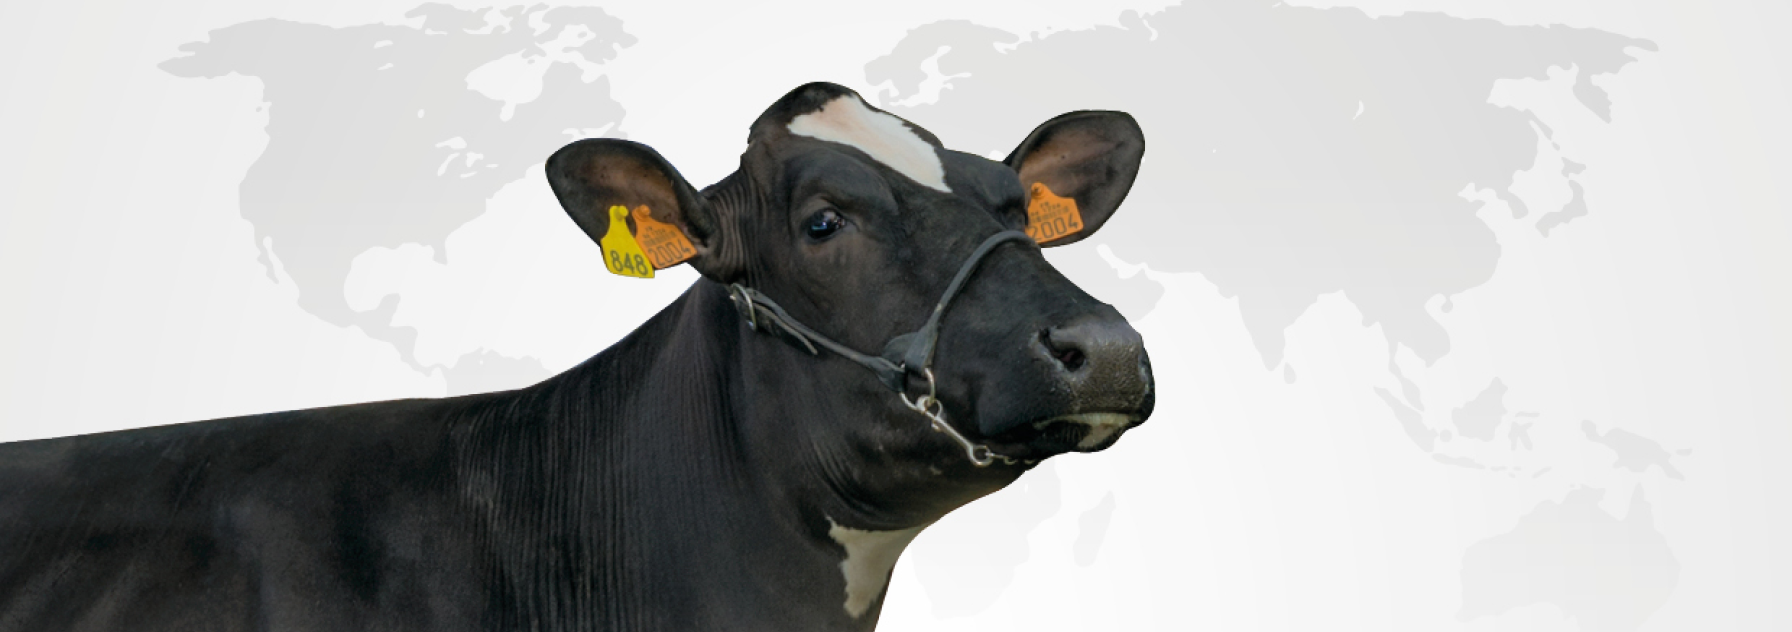 synetics internationnal bull offer